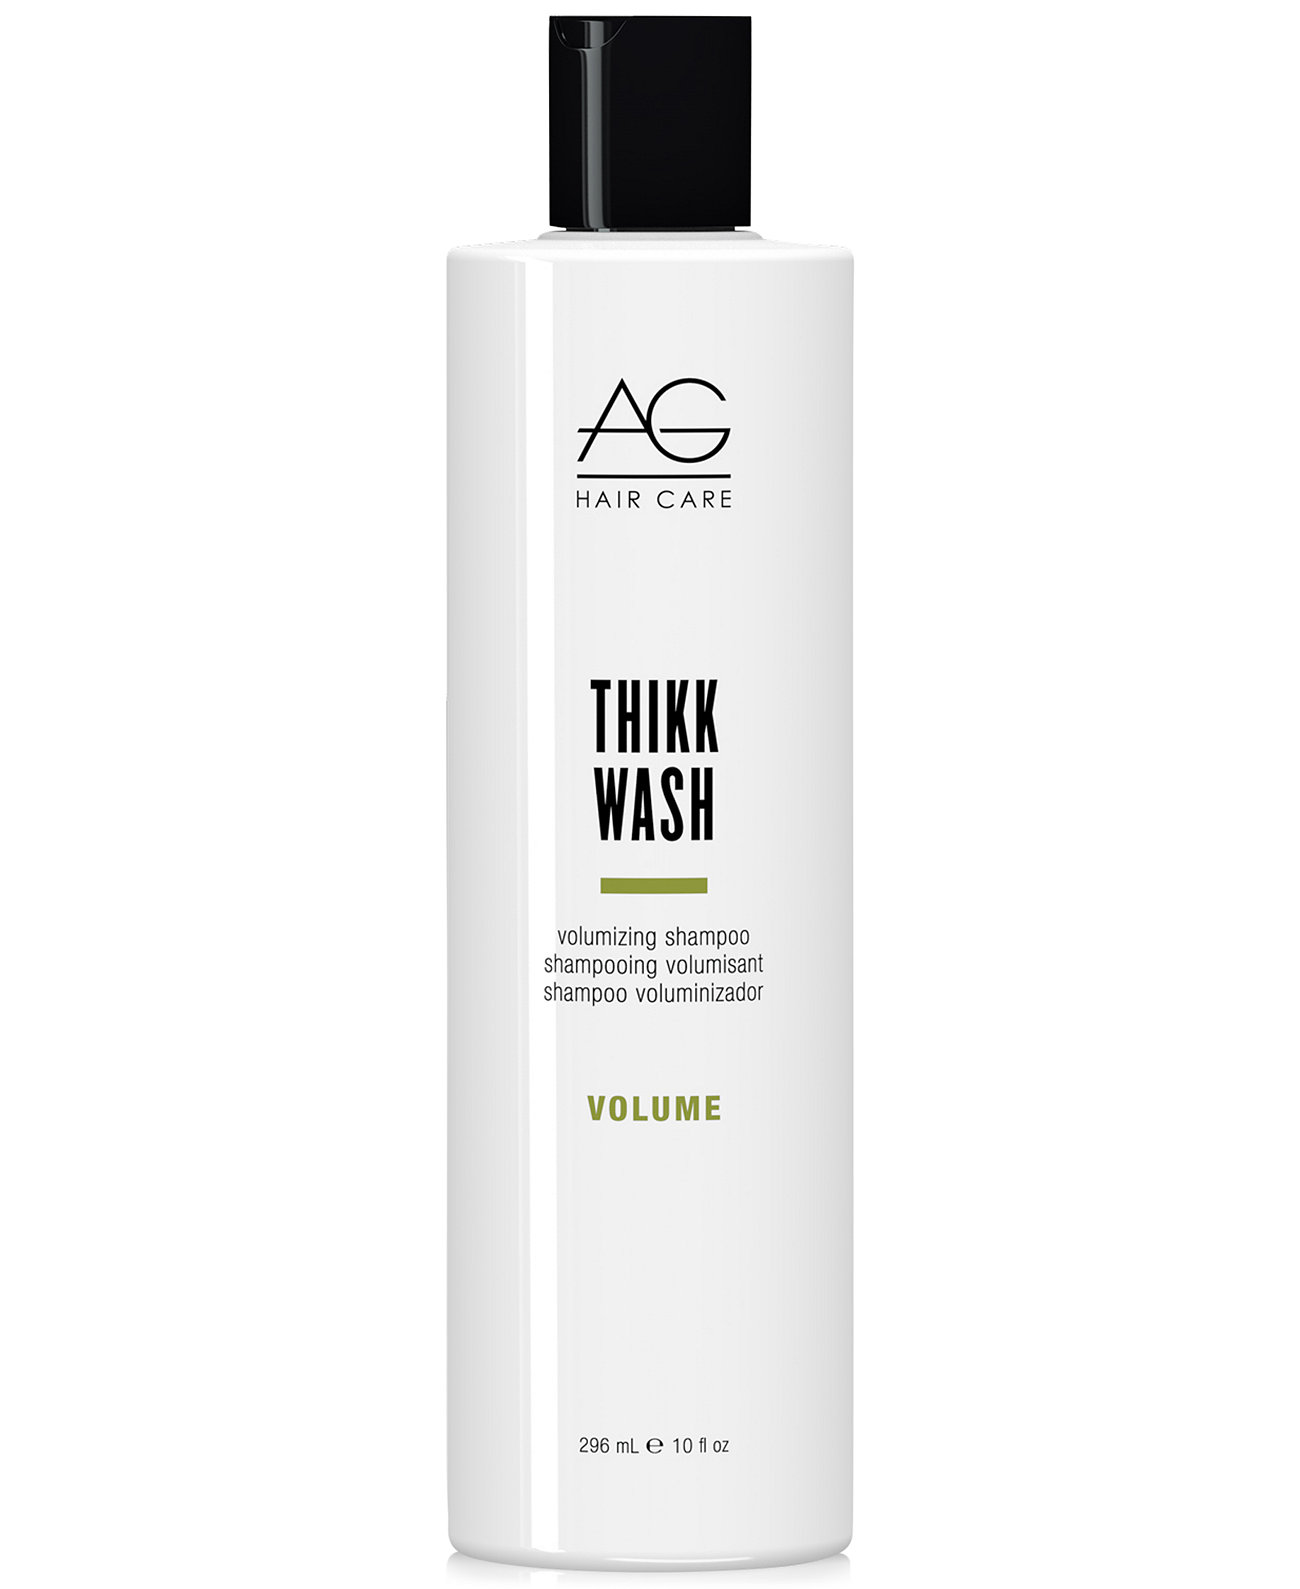 Thikk Wash Shampoo, 10 унций, от PUREBEAUTY Salon & Spa AG Hair